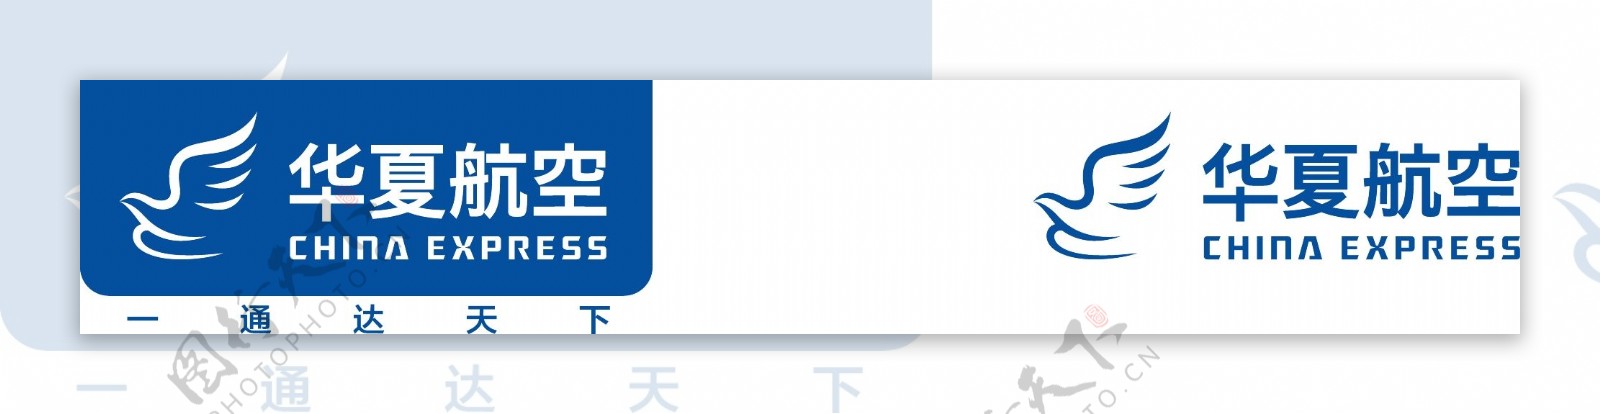 华夏航空2016最新版logo